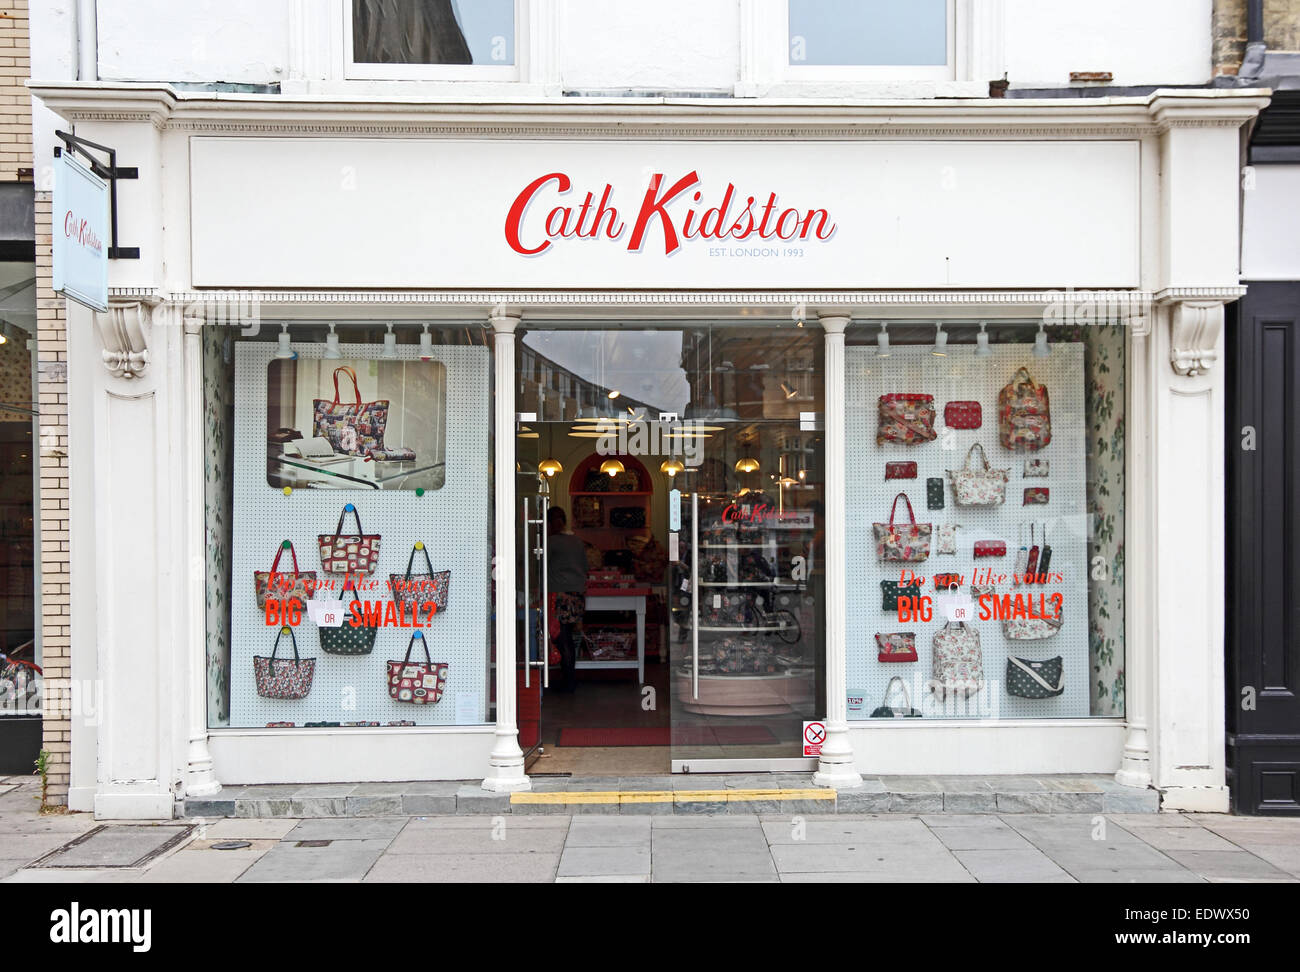 cath kidston shop london